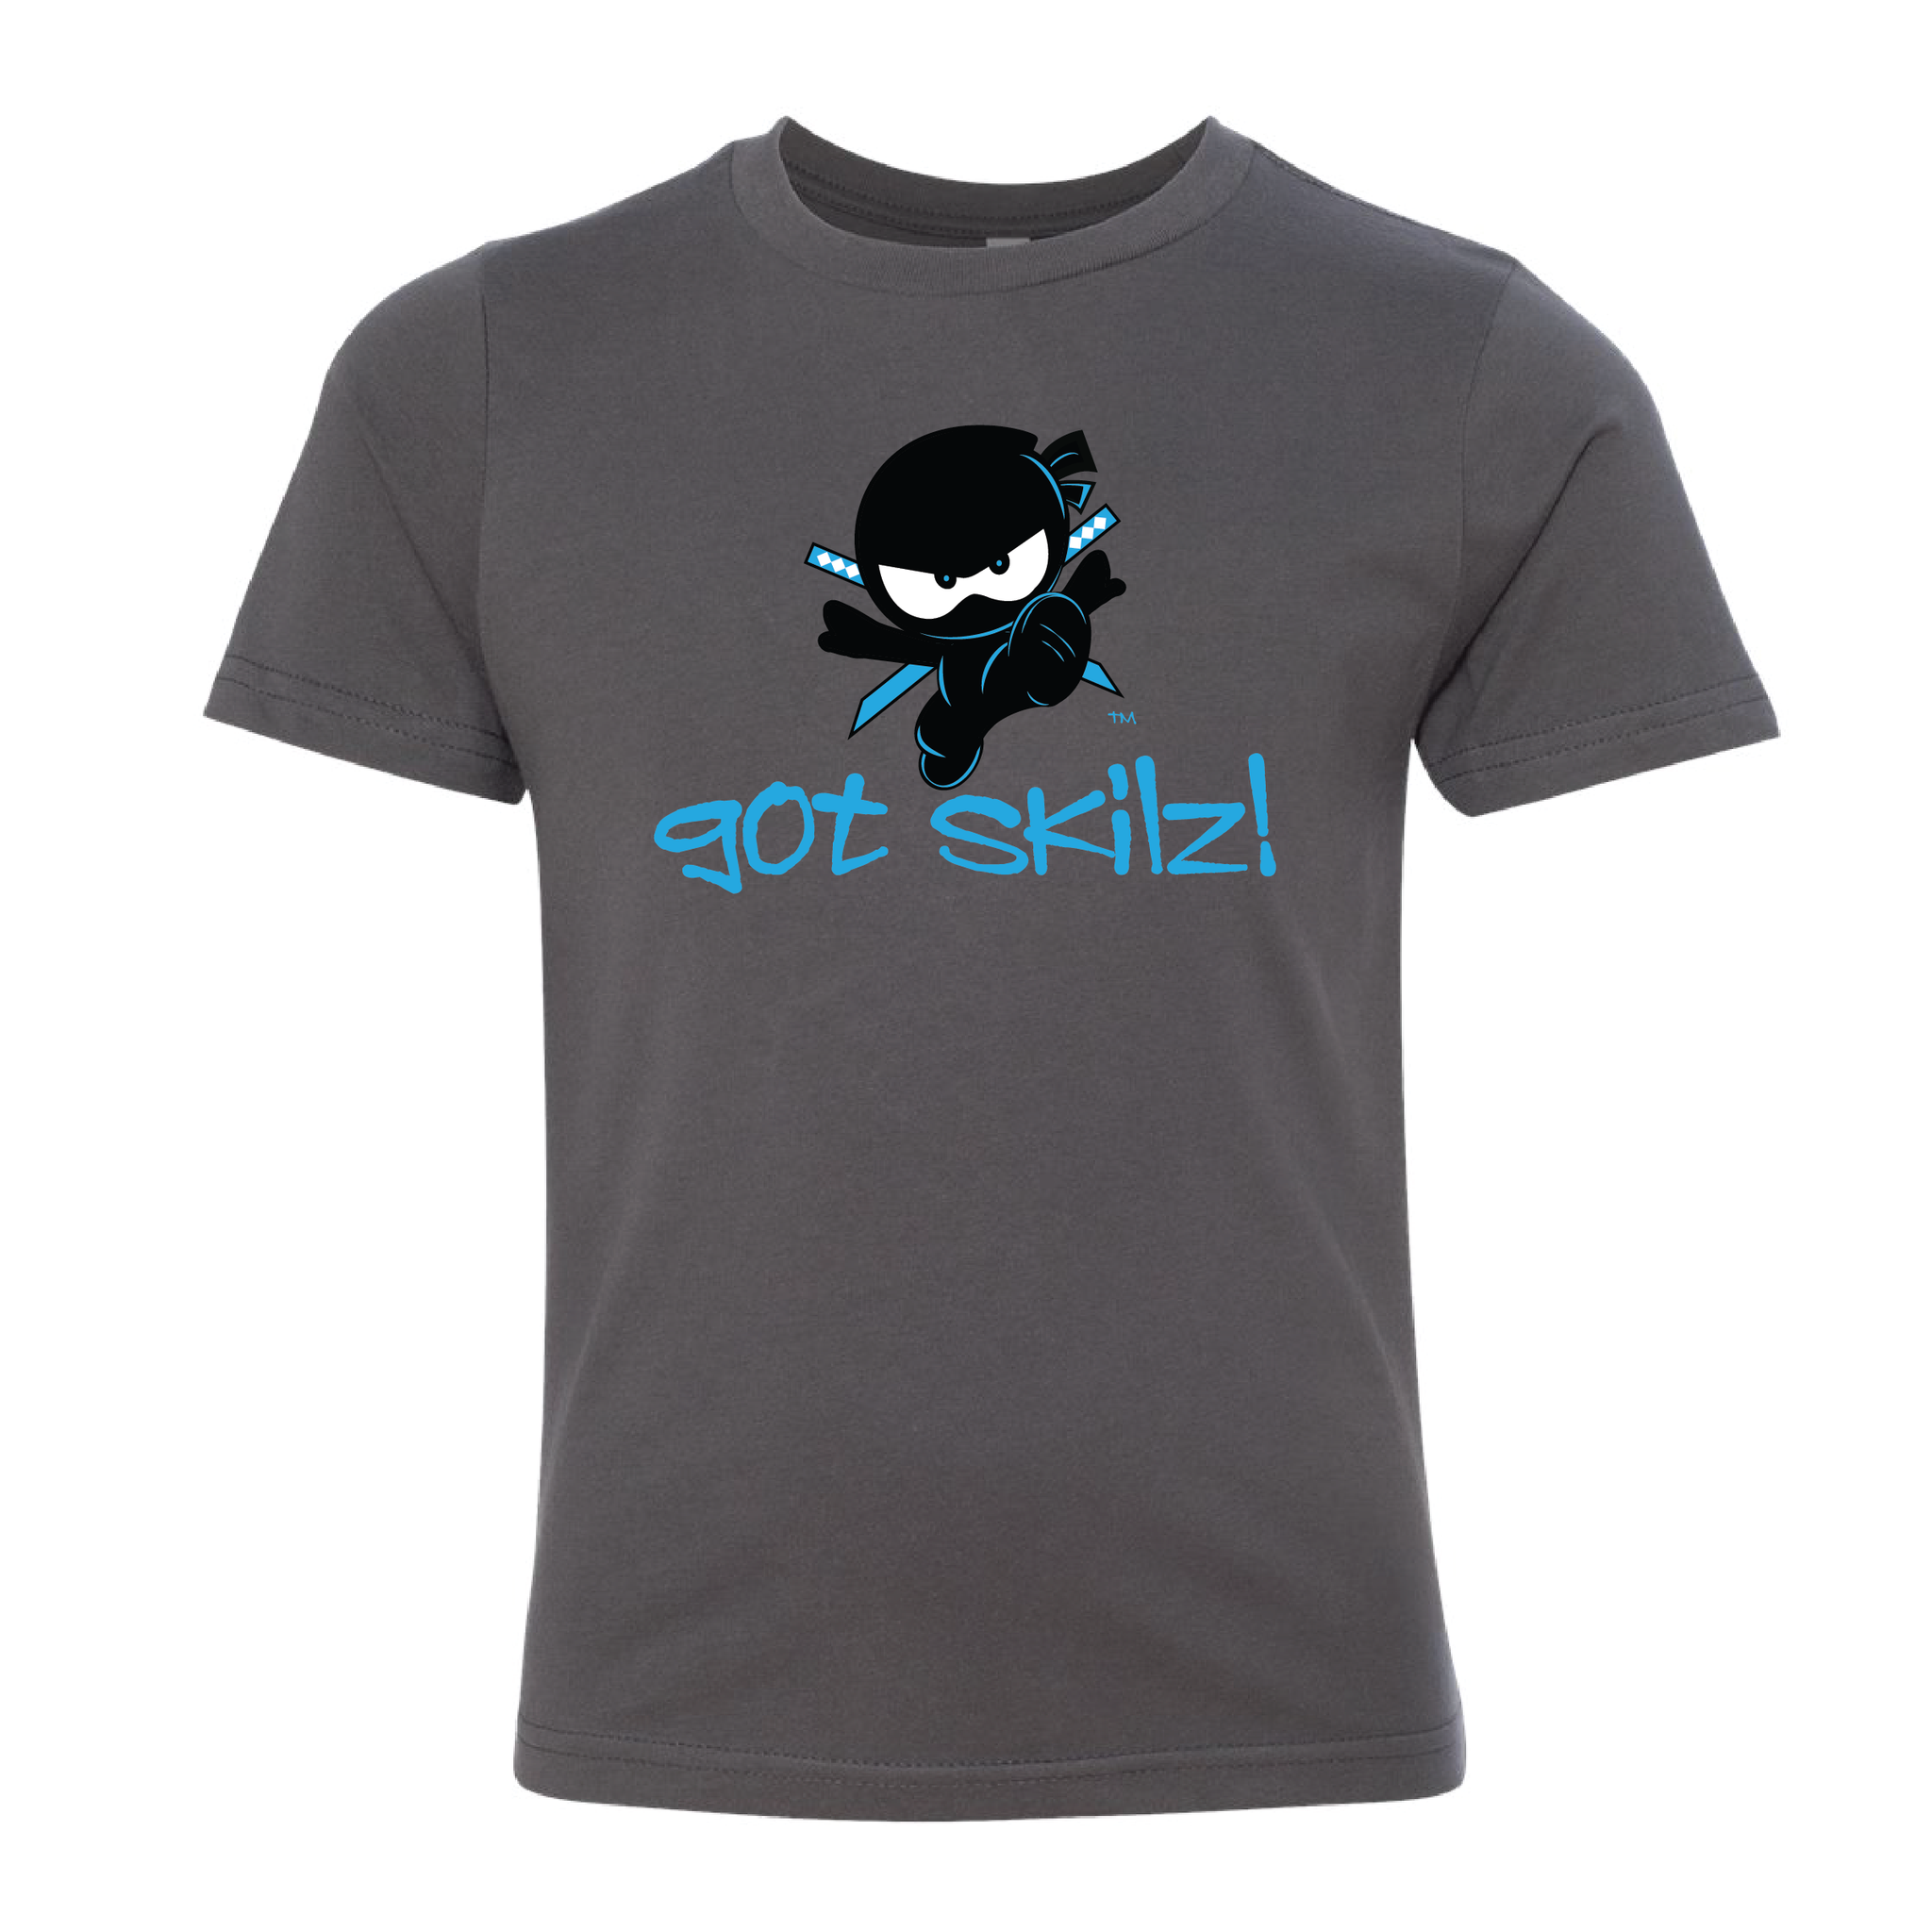 Got Skilz T Shirt 3.0 ©